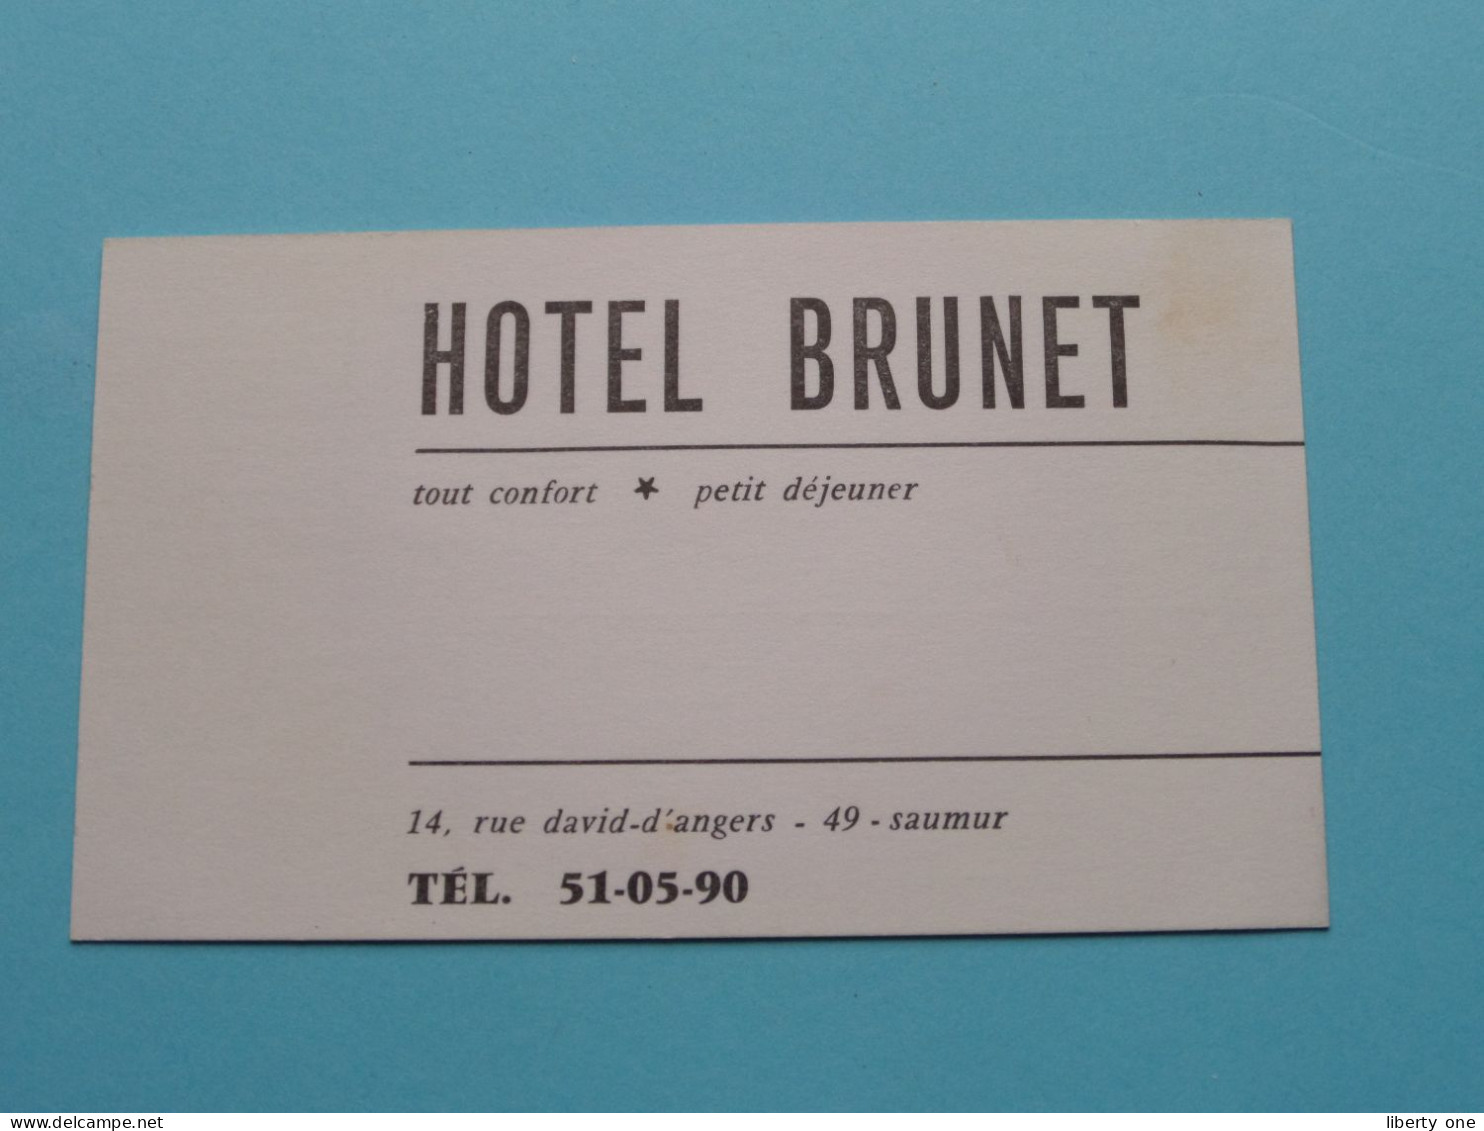 Hotel BRUNET > SAUMUR ( Zie / Voir SCAN ) La FRANCE ! - Cartes De Visite